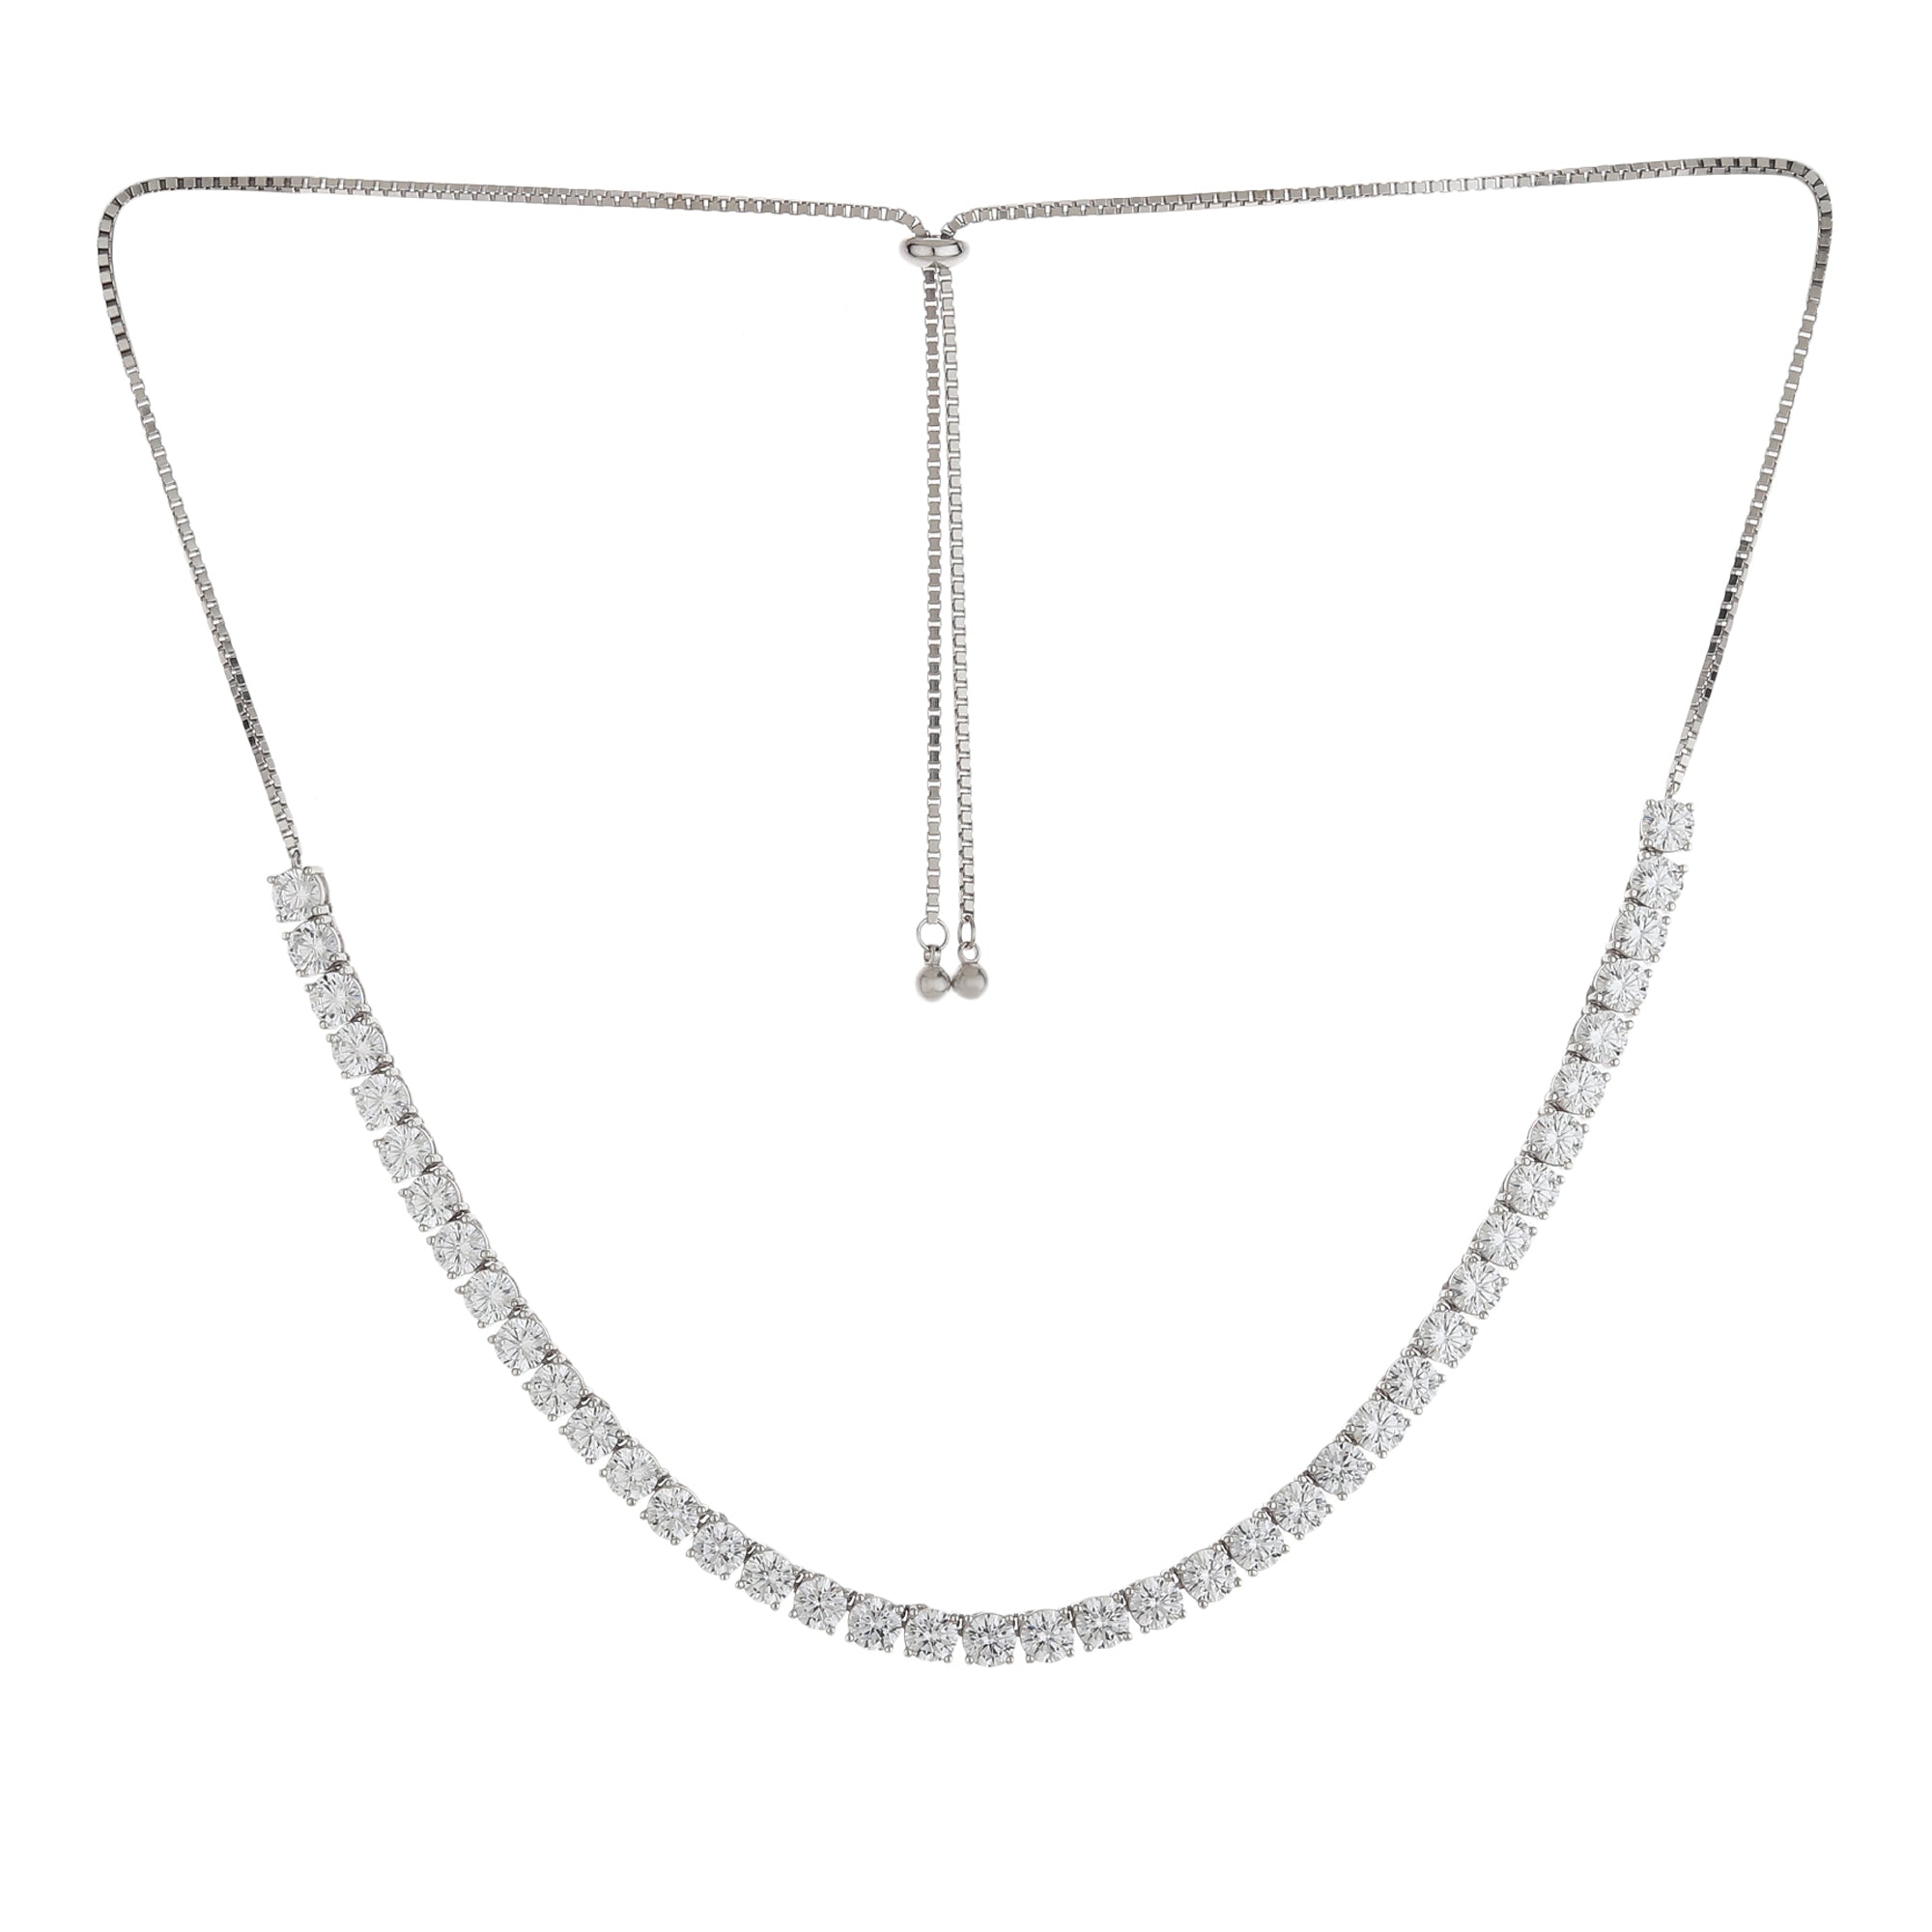 Swarovski Crystal Wishes Necklace